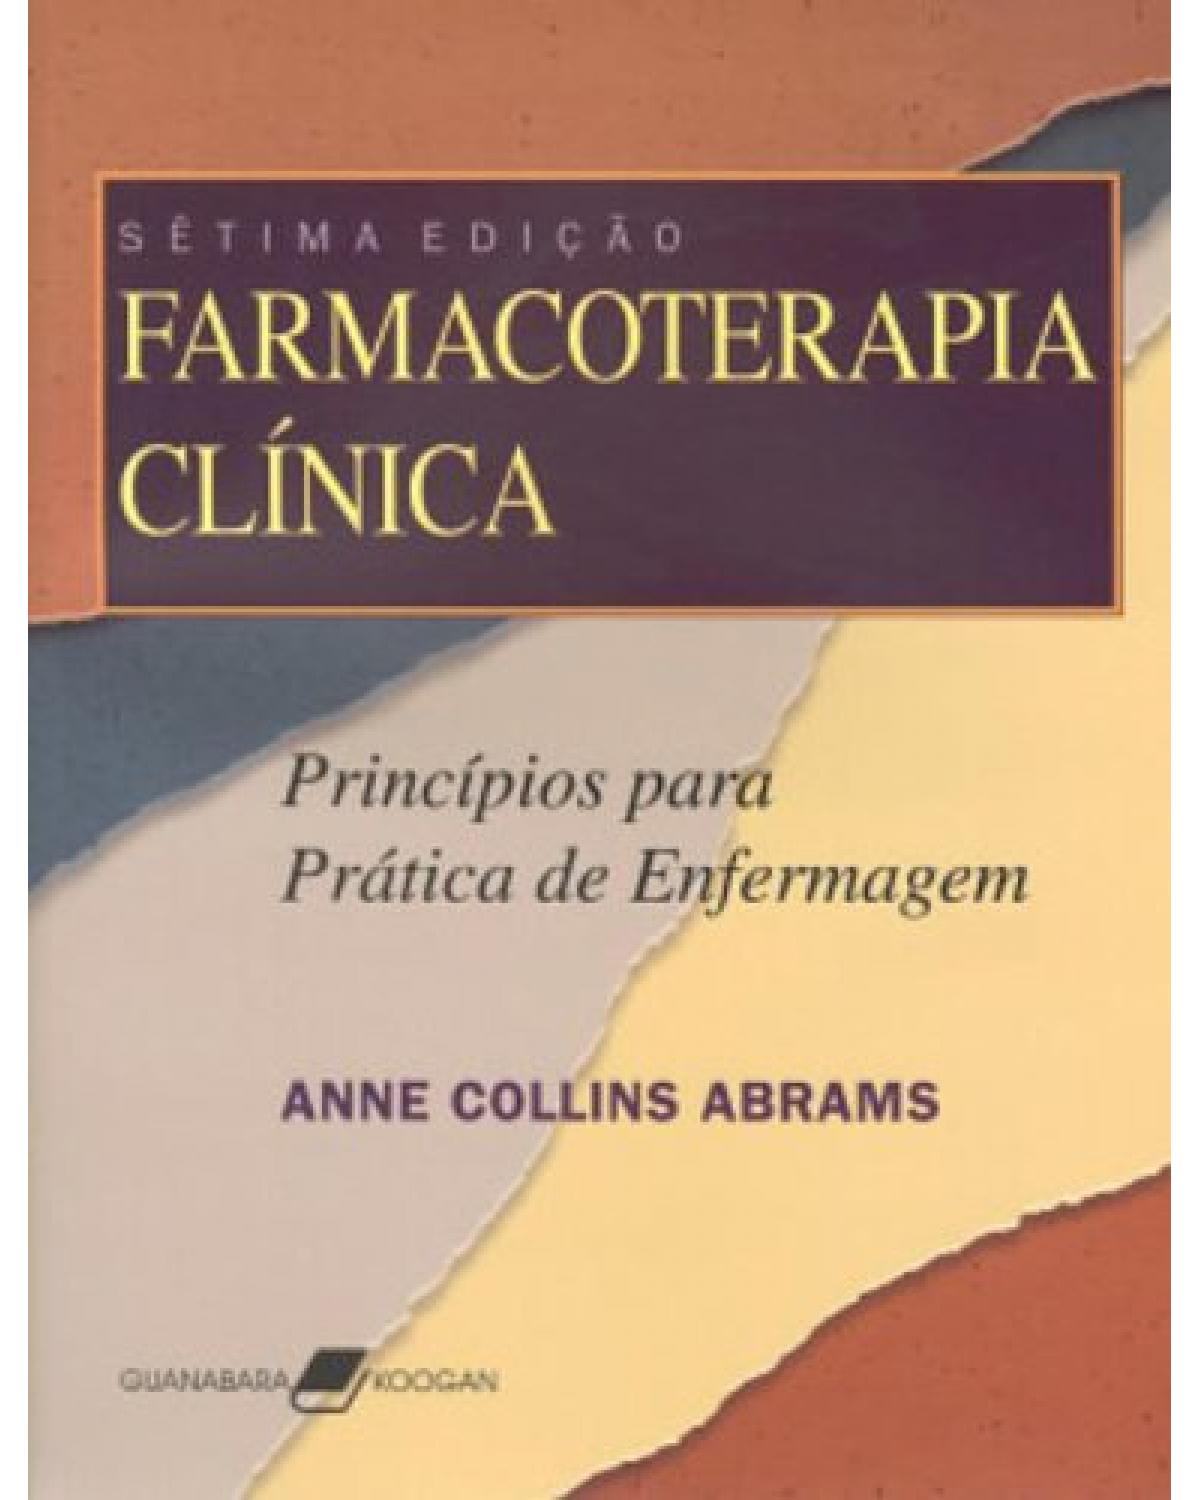 Farmacoterapia clínica - Princípios para prática de enfermagem - 7ª Edição | 2006